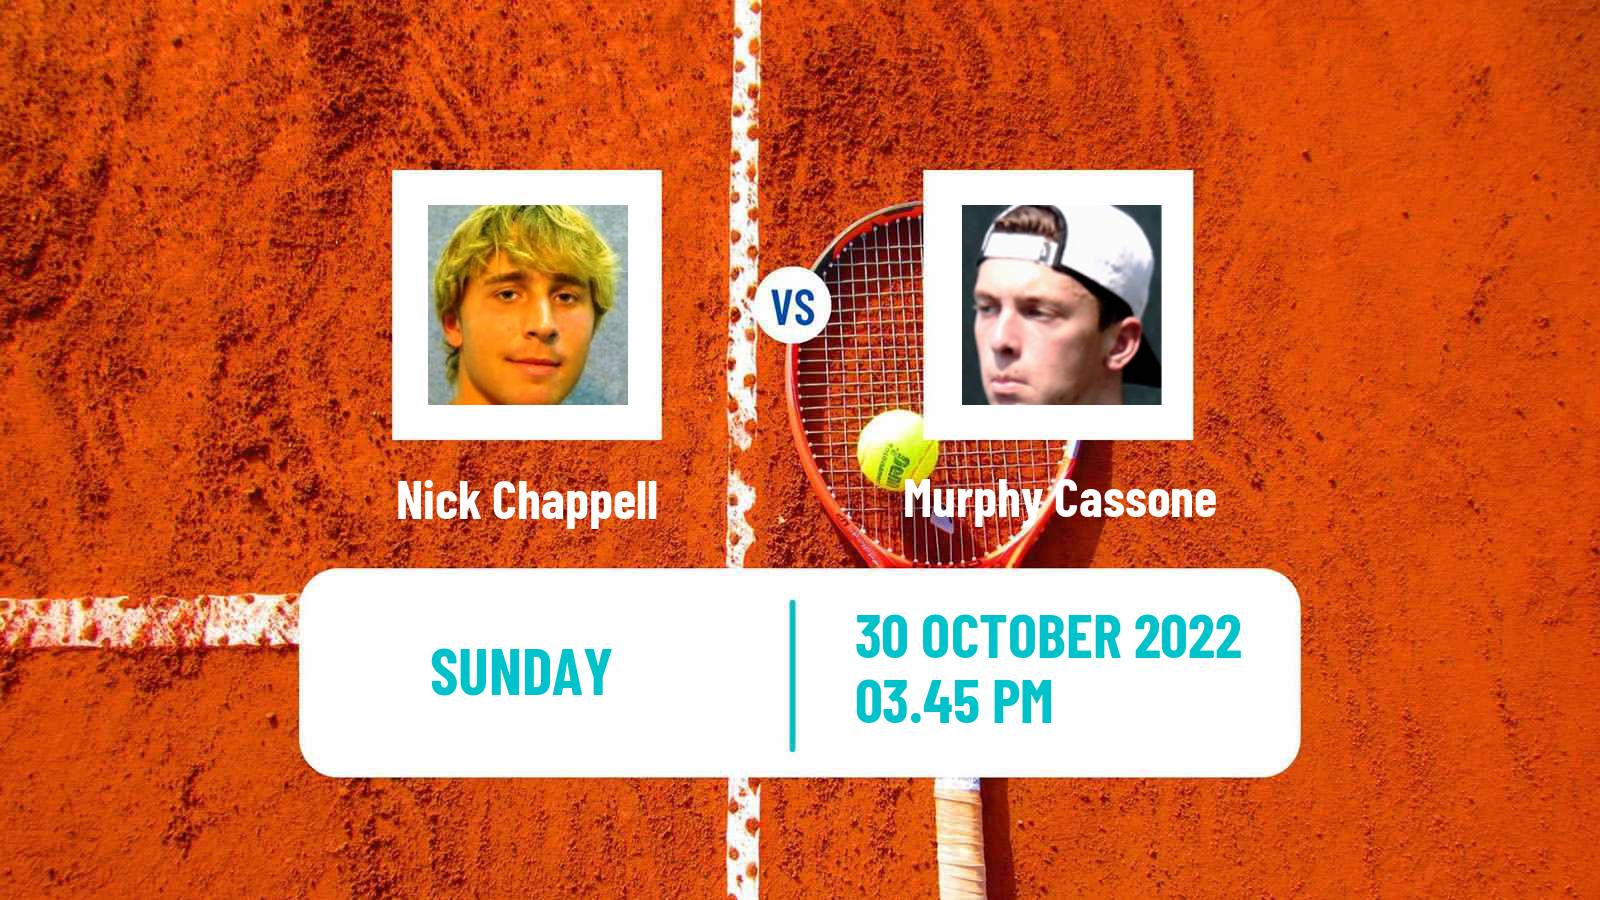 Tennis ATP Challenger Nick Chappell - Murphy Cassone